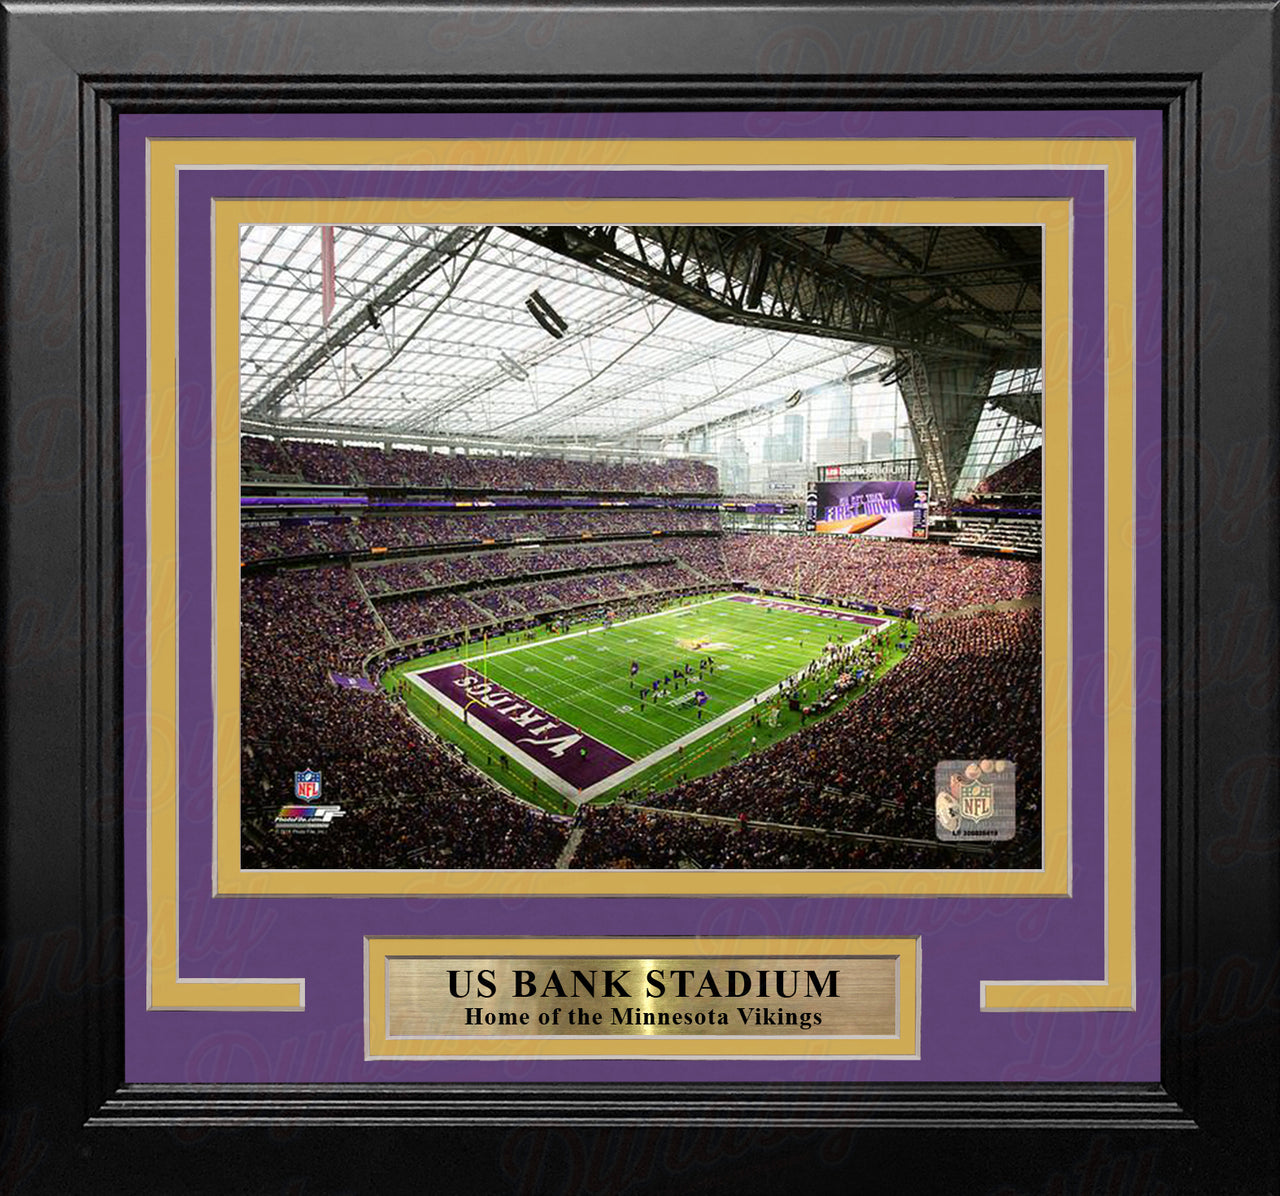 Minnesota Vikings U.S. Bank Stadium 8" x 10" Framed Football Photo